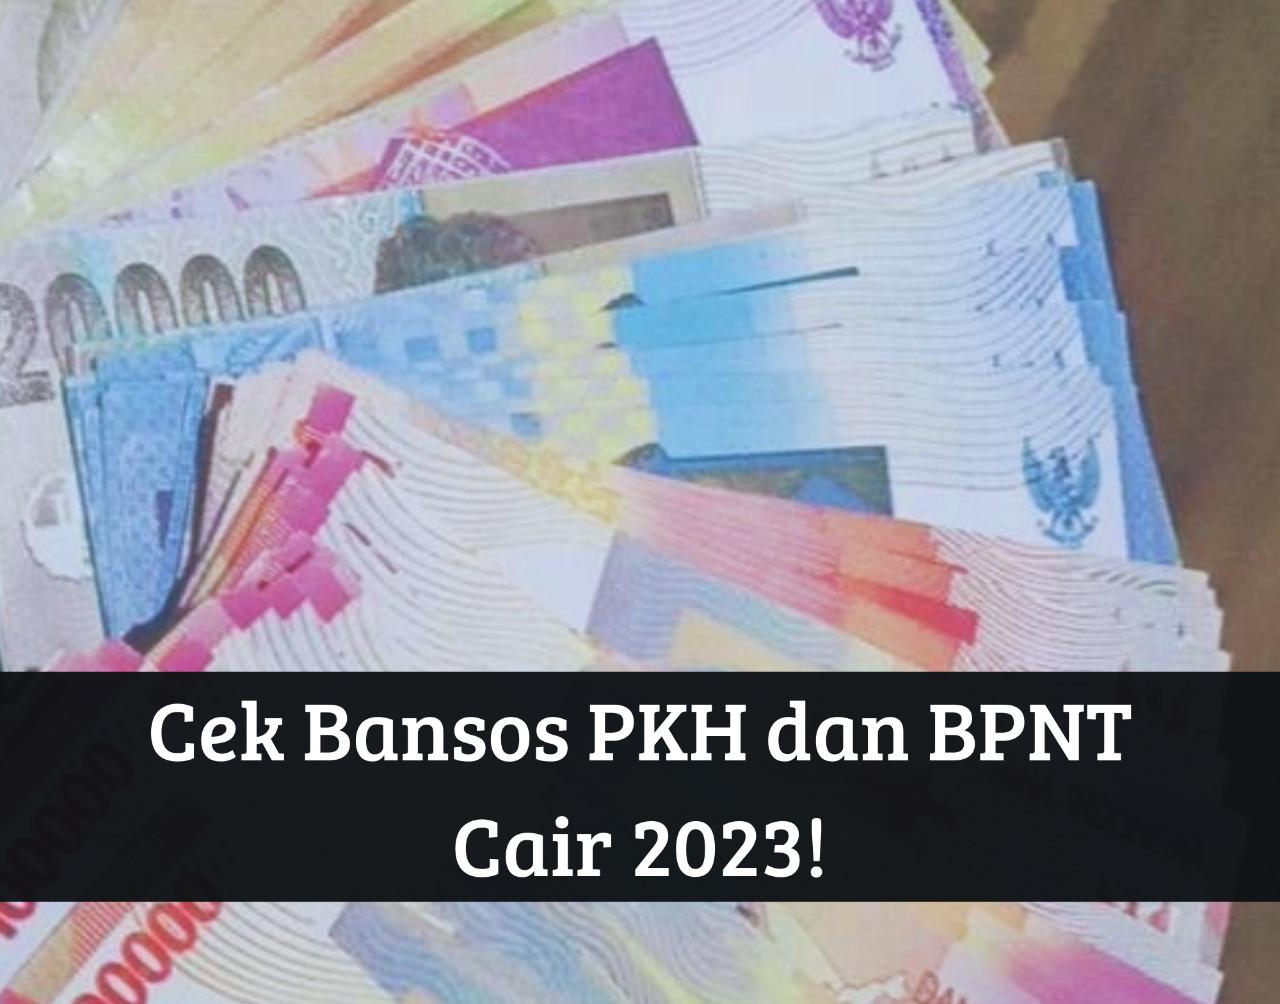 Cek Penerima September! Bansos PKH dan BPNT 2023 Cair Serentak, Dapat BLT hingga Rp3.000.000